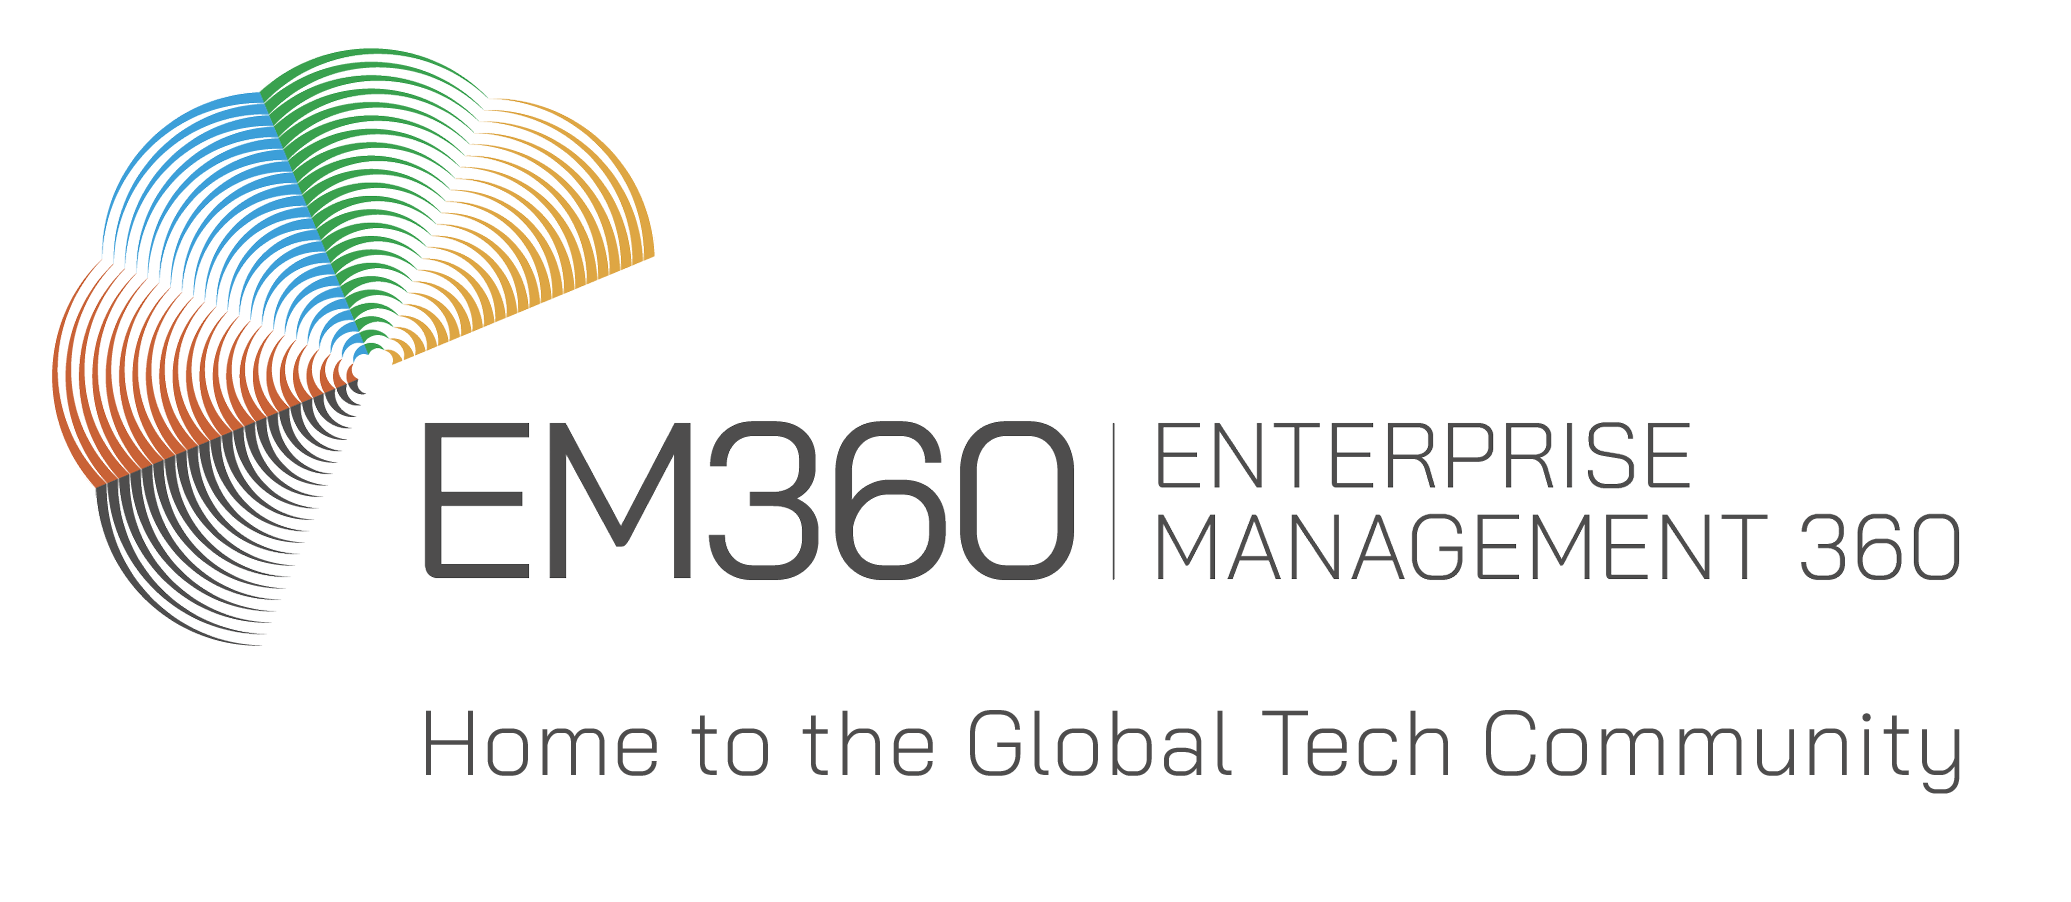 Enterprise Management 360 (EM360)